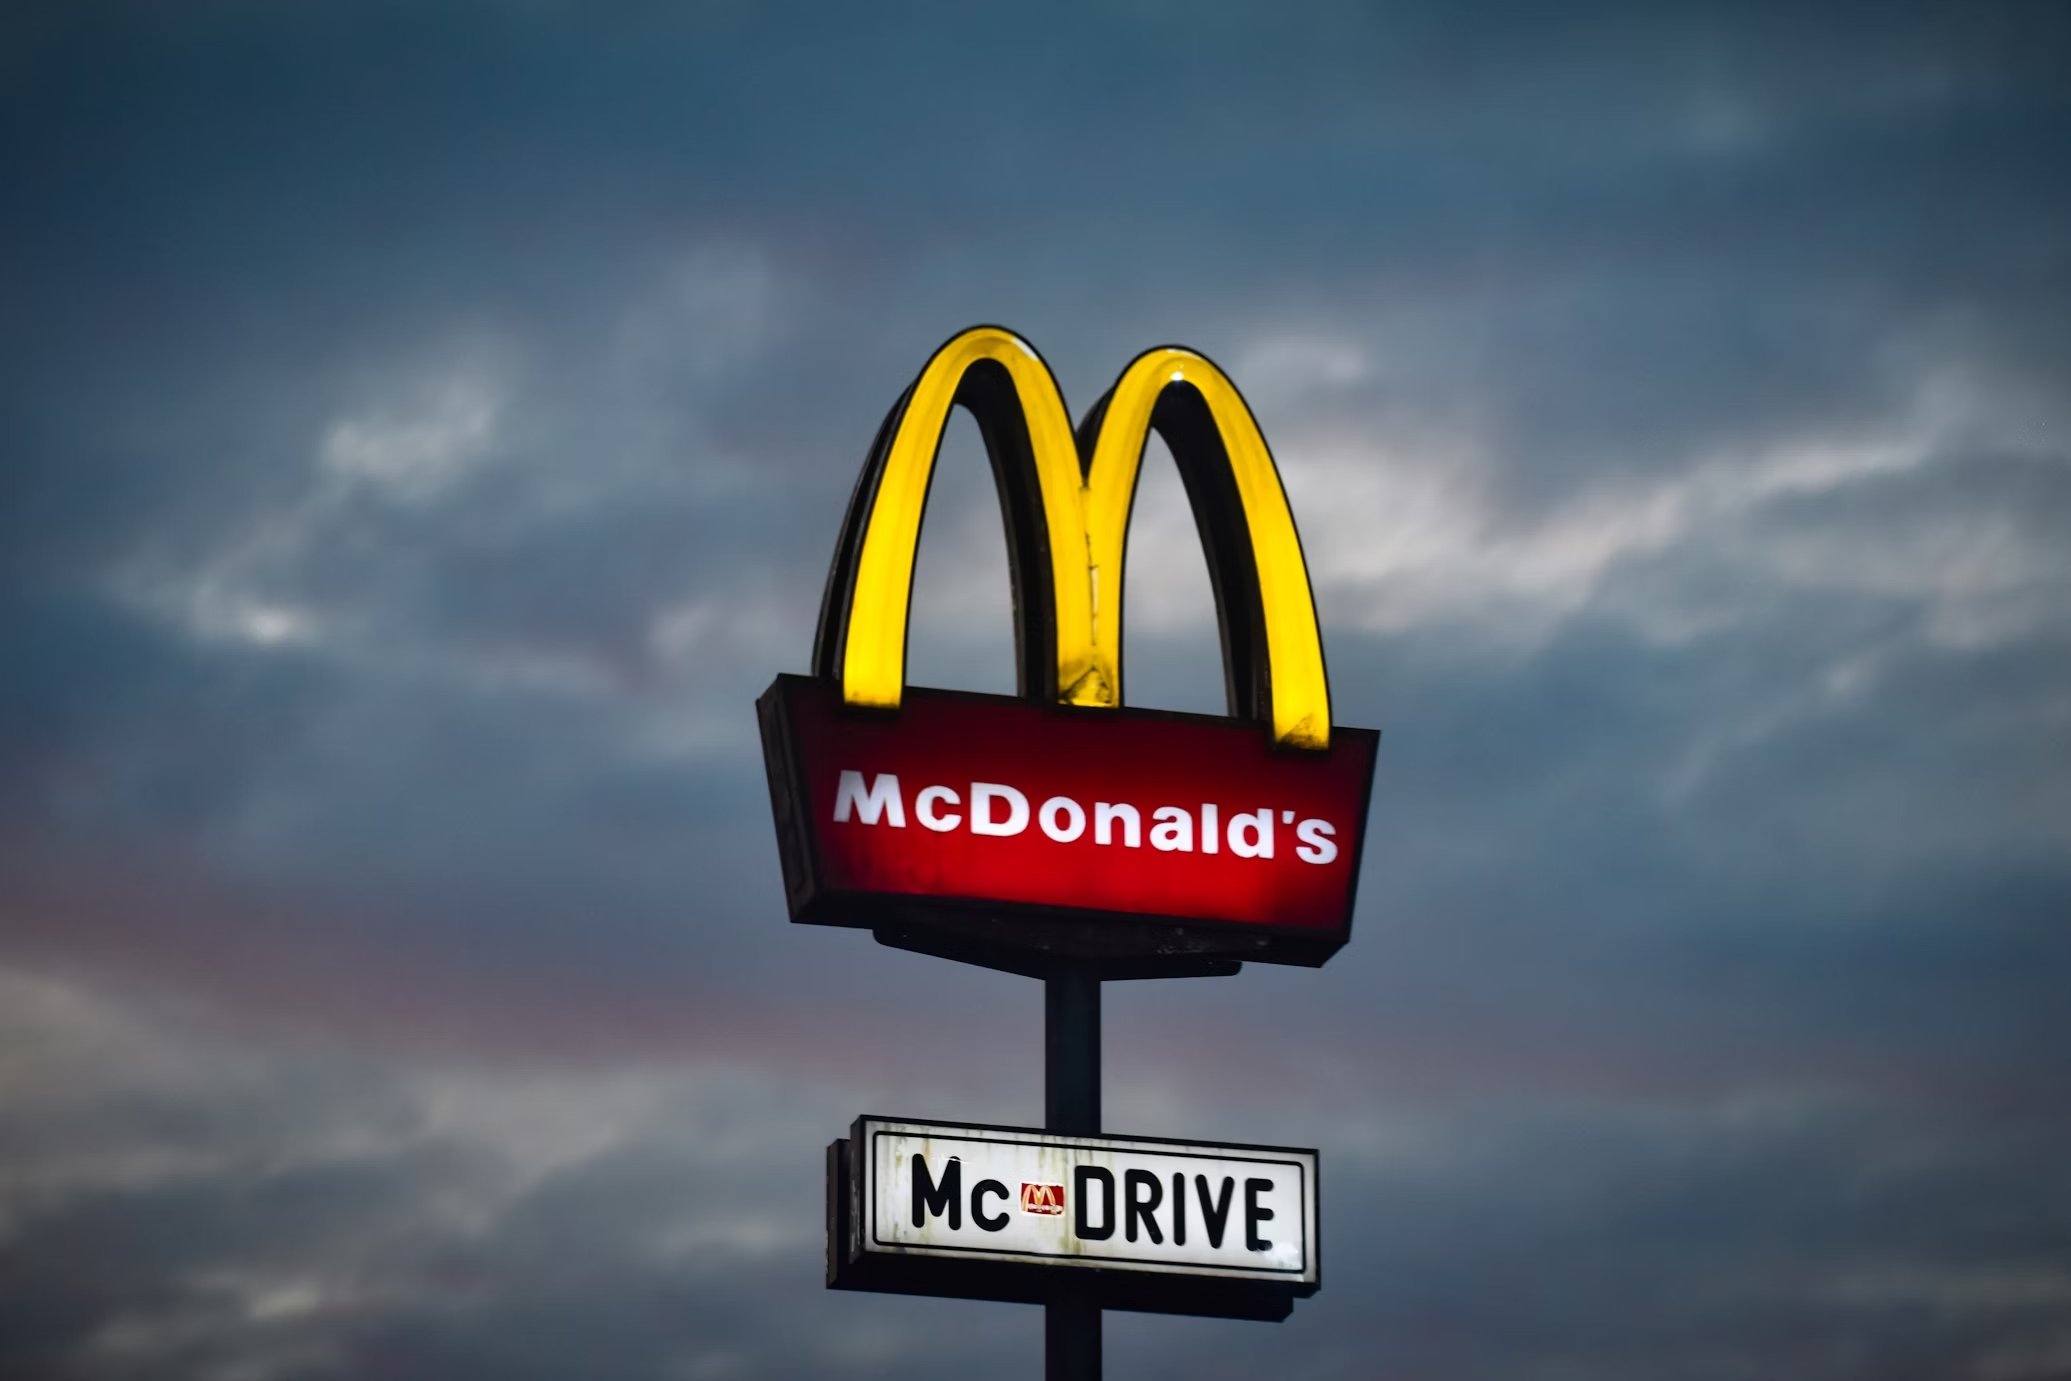 McDonalds confirma falha em sistemas devido a erro de configuração